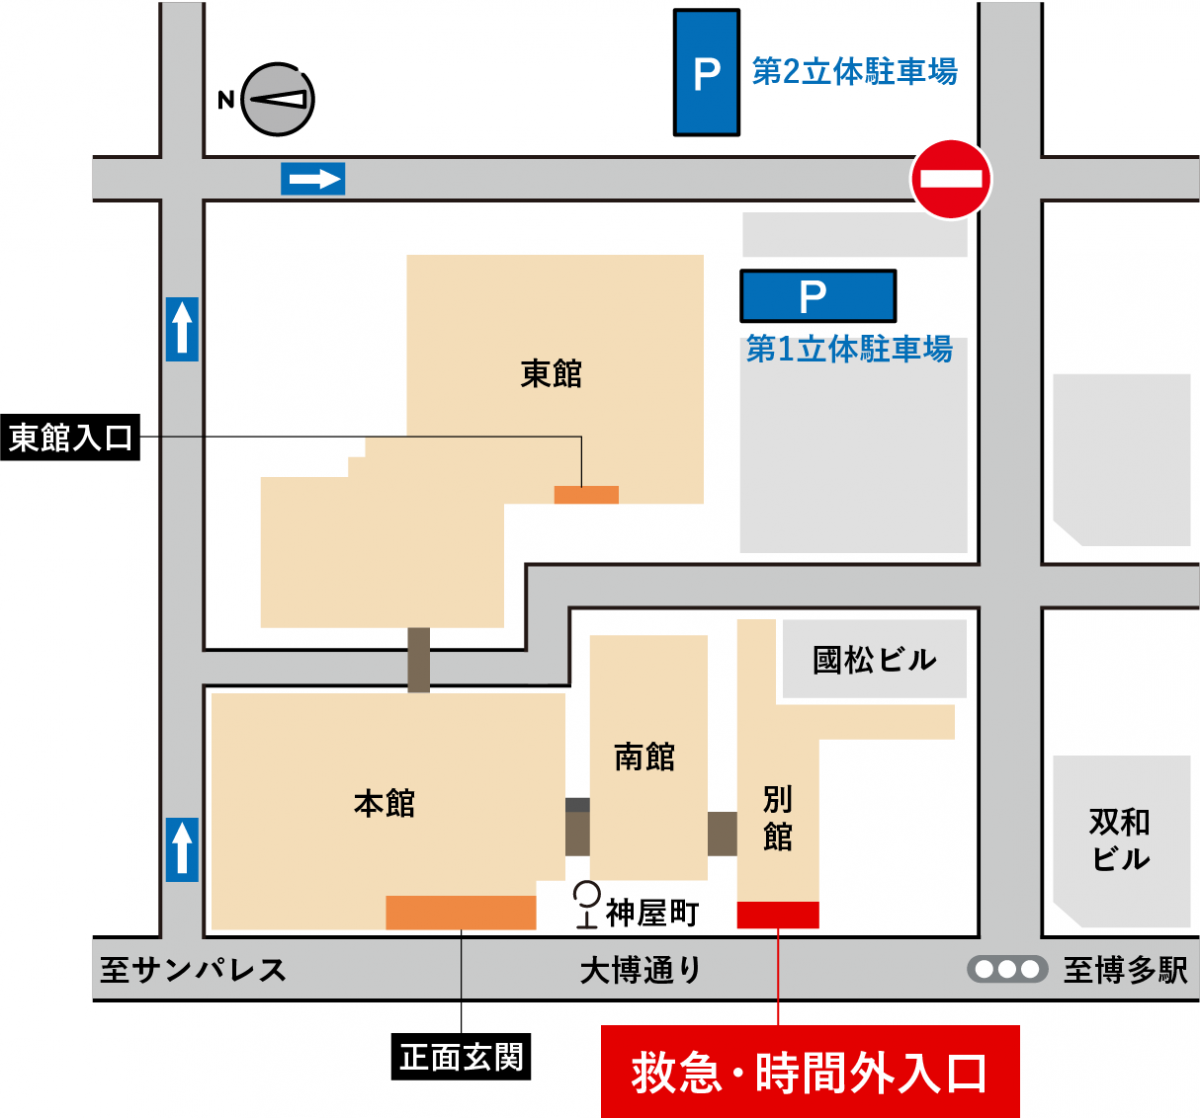 図：時間外受付の入口を表した地図。原三信病院別館に救急・時間外入口があります。